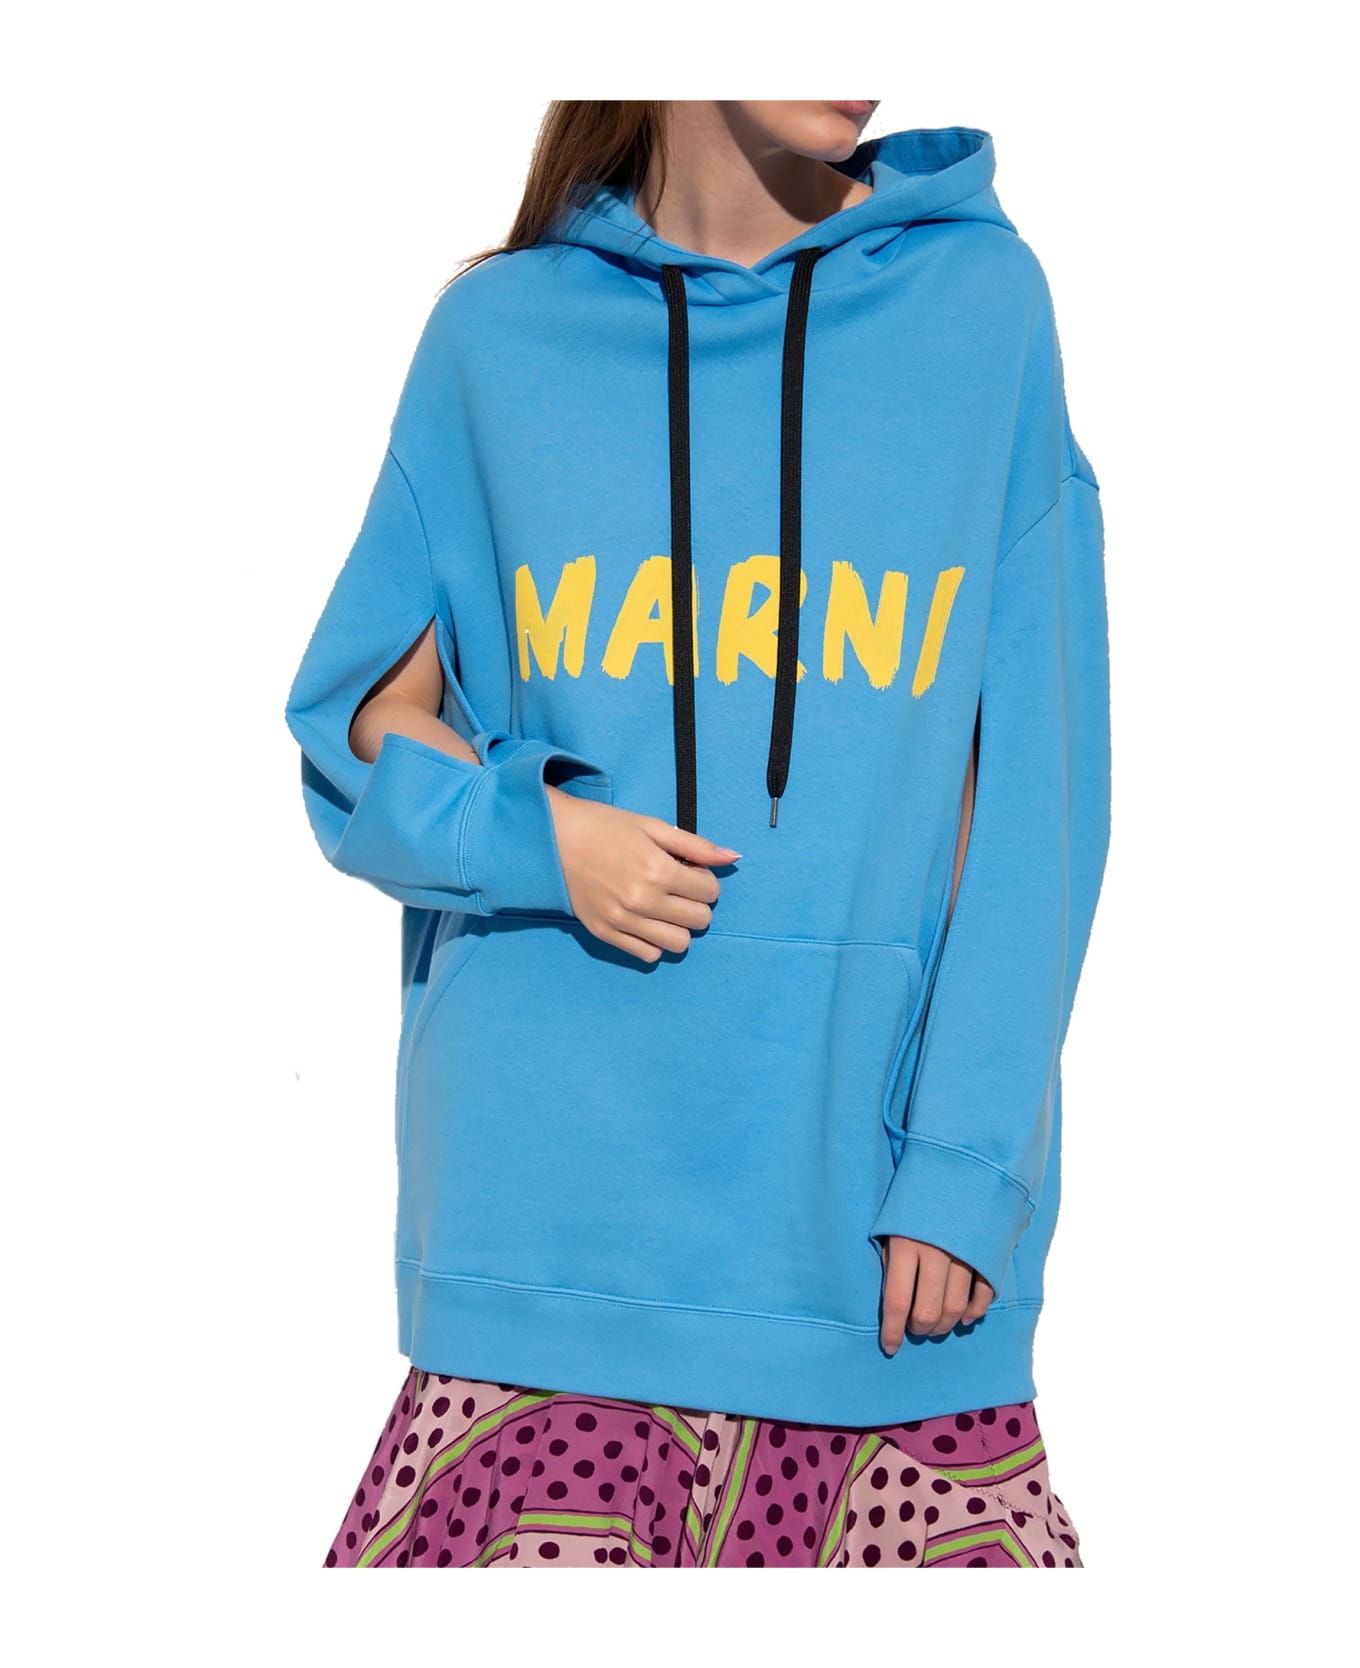 Marni Oversize Hooded Sweatshirt - Blue